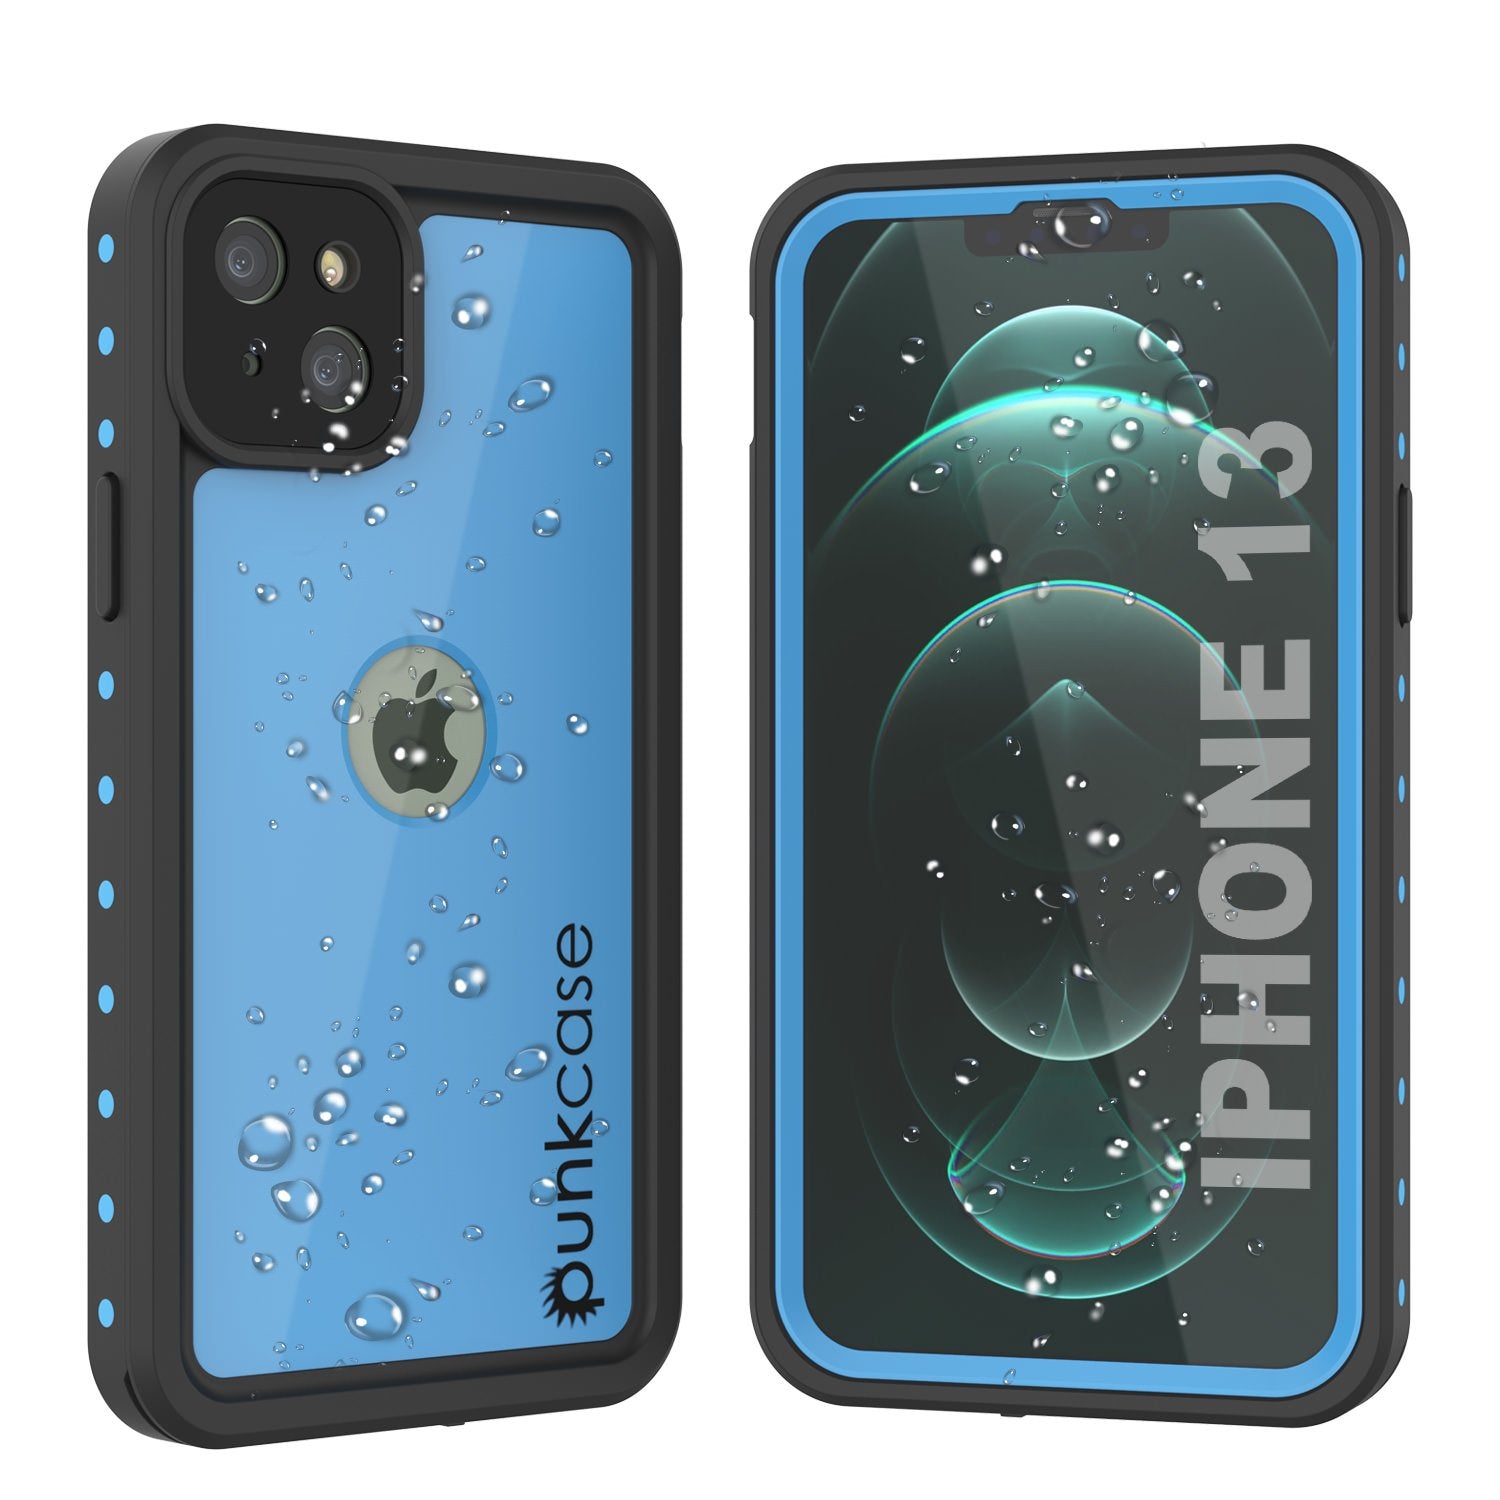 iPhone 13 Waterproof IP68 Case, Punkcase [Light blue] [StudStar Series] [Slim Fit] [Dirtproof]